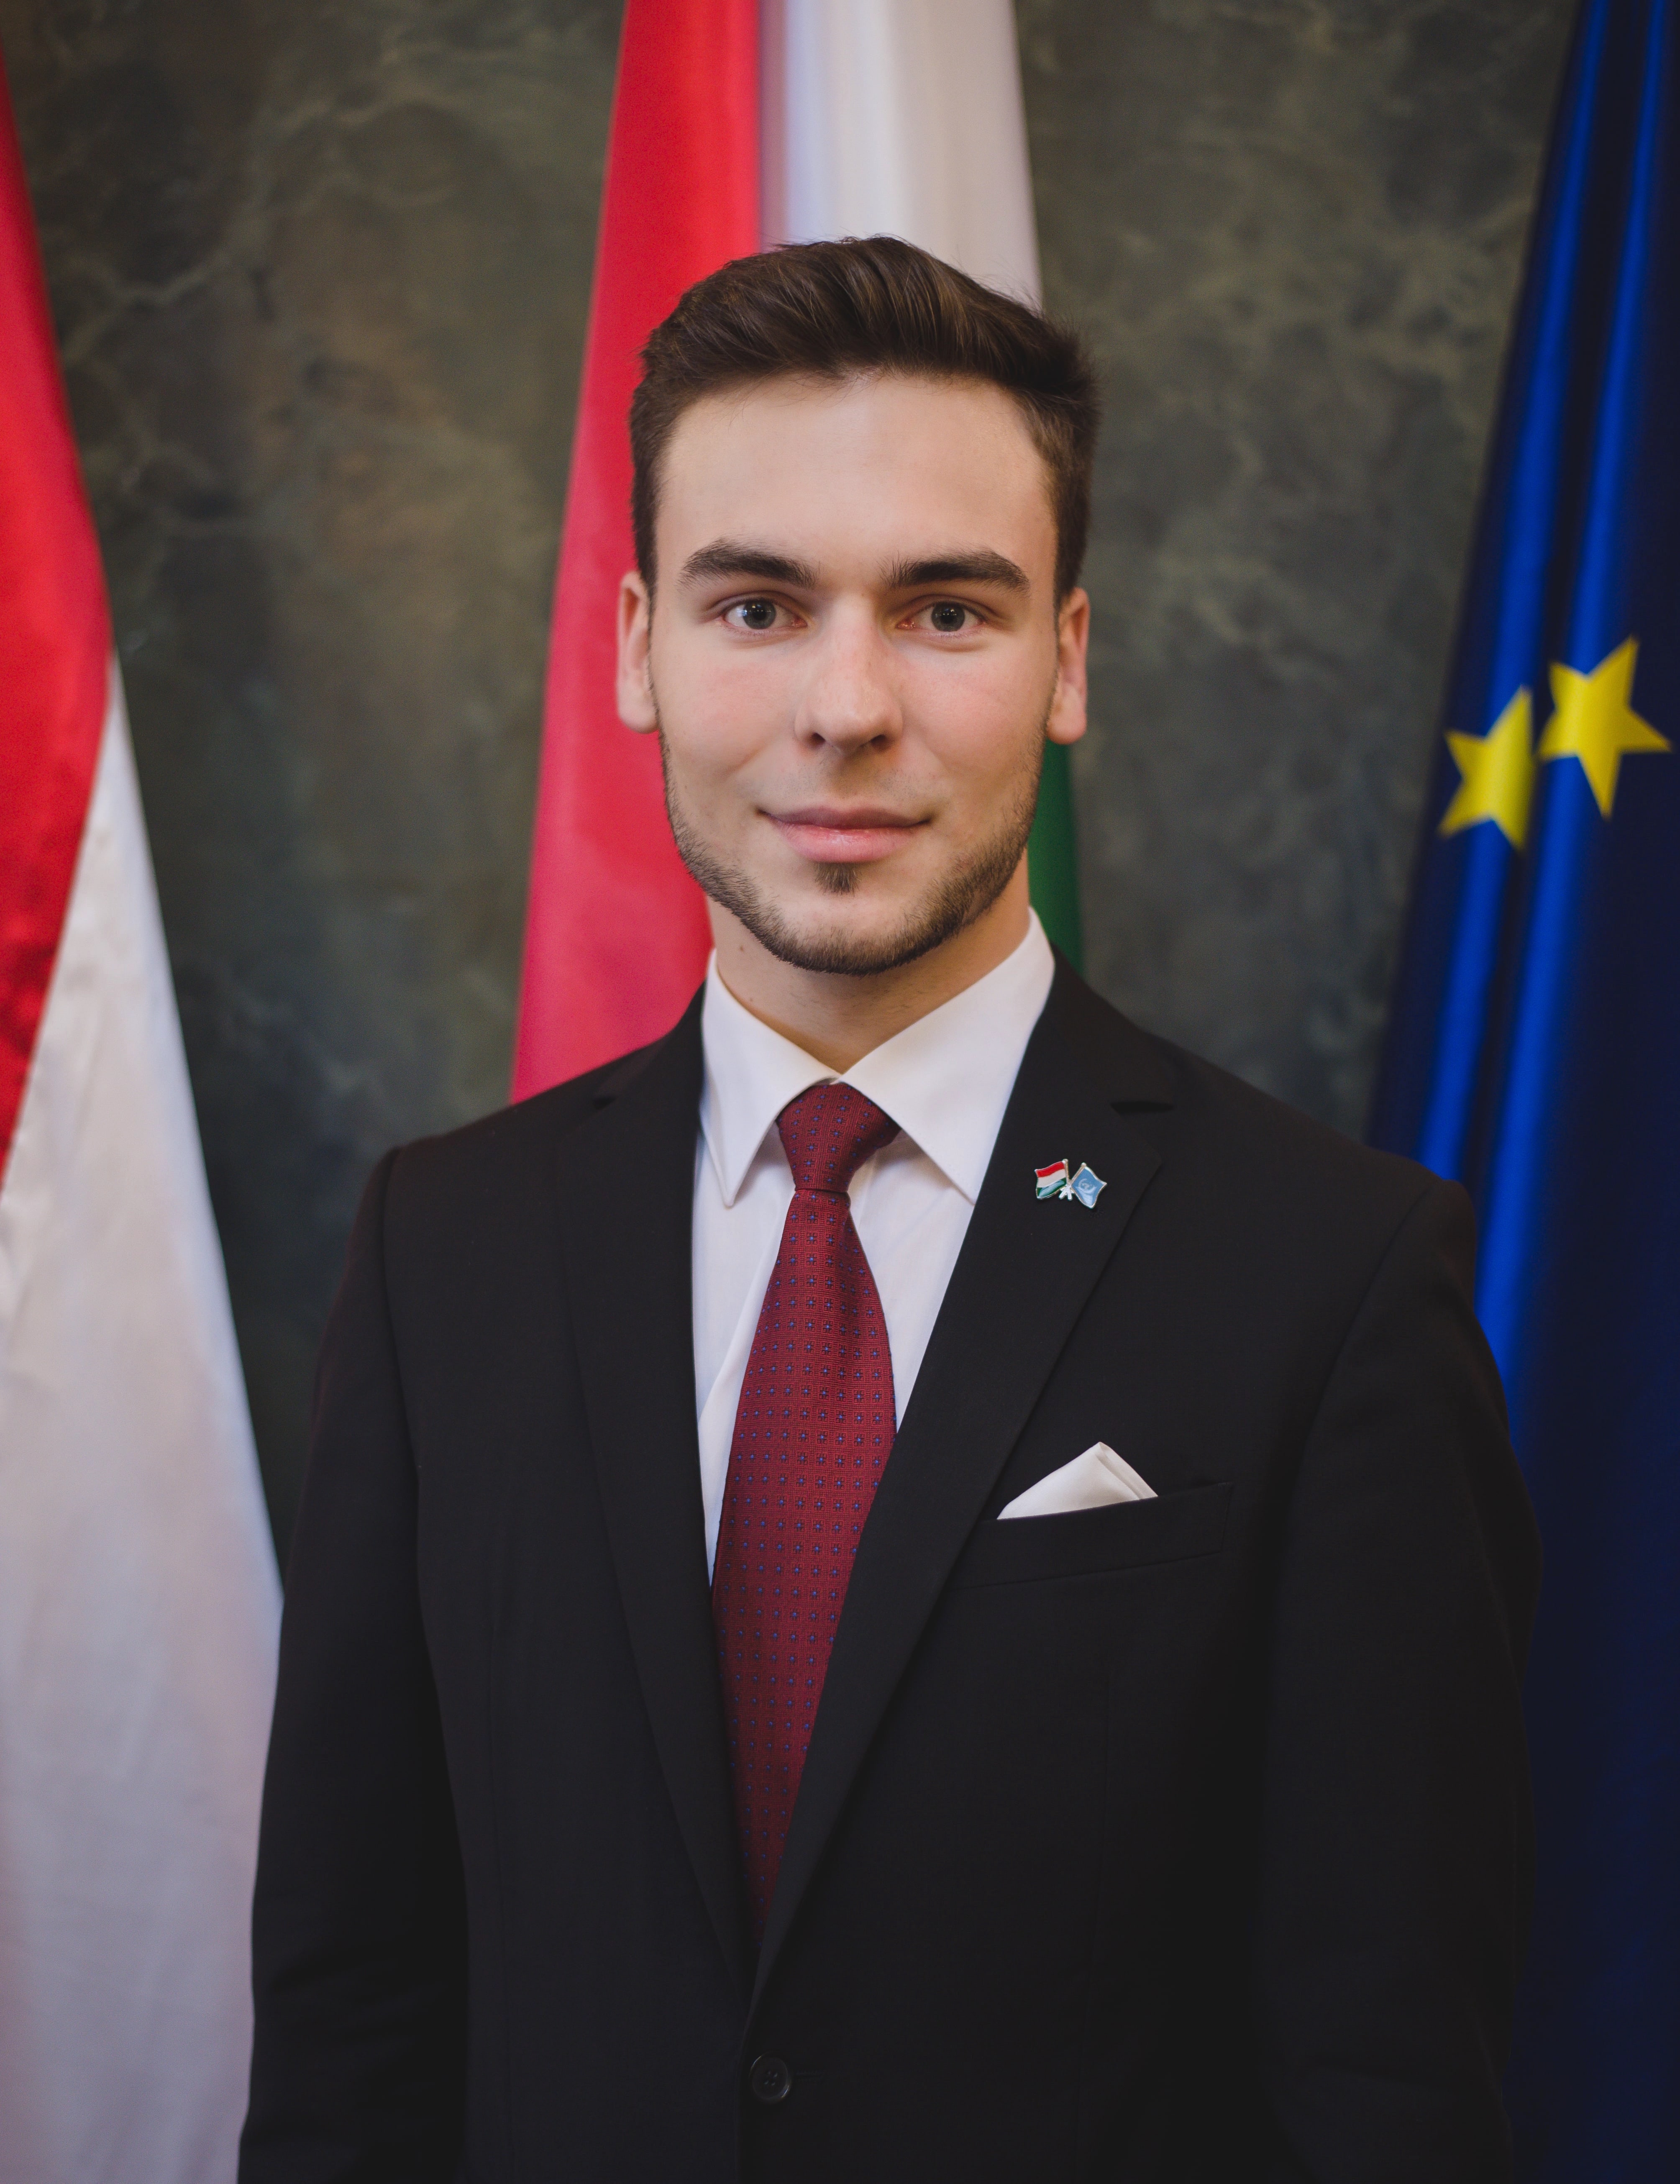 András Volom United Nations Youth Delegate of Hungary - Volom András Magyarország ENSZ Ifjúsági Küldöttje